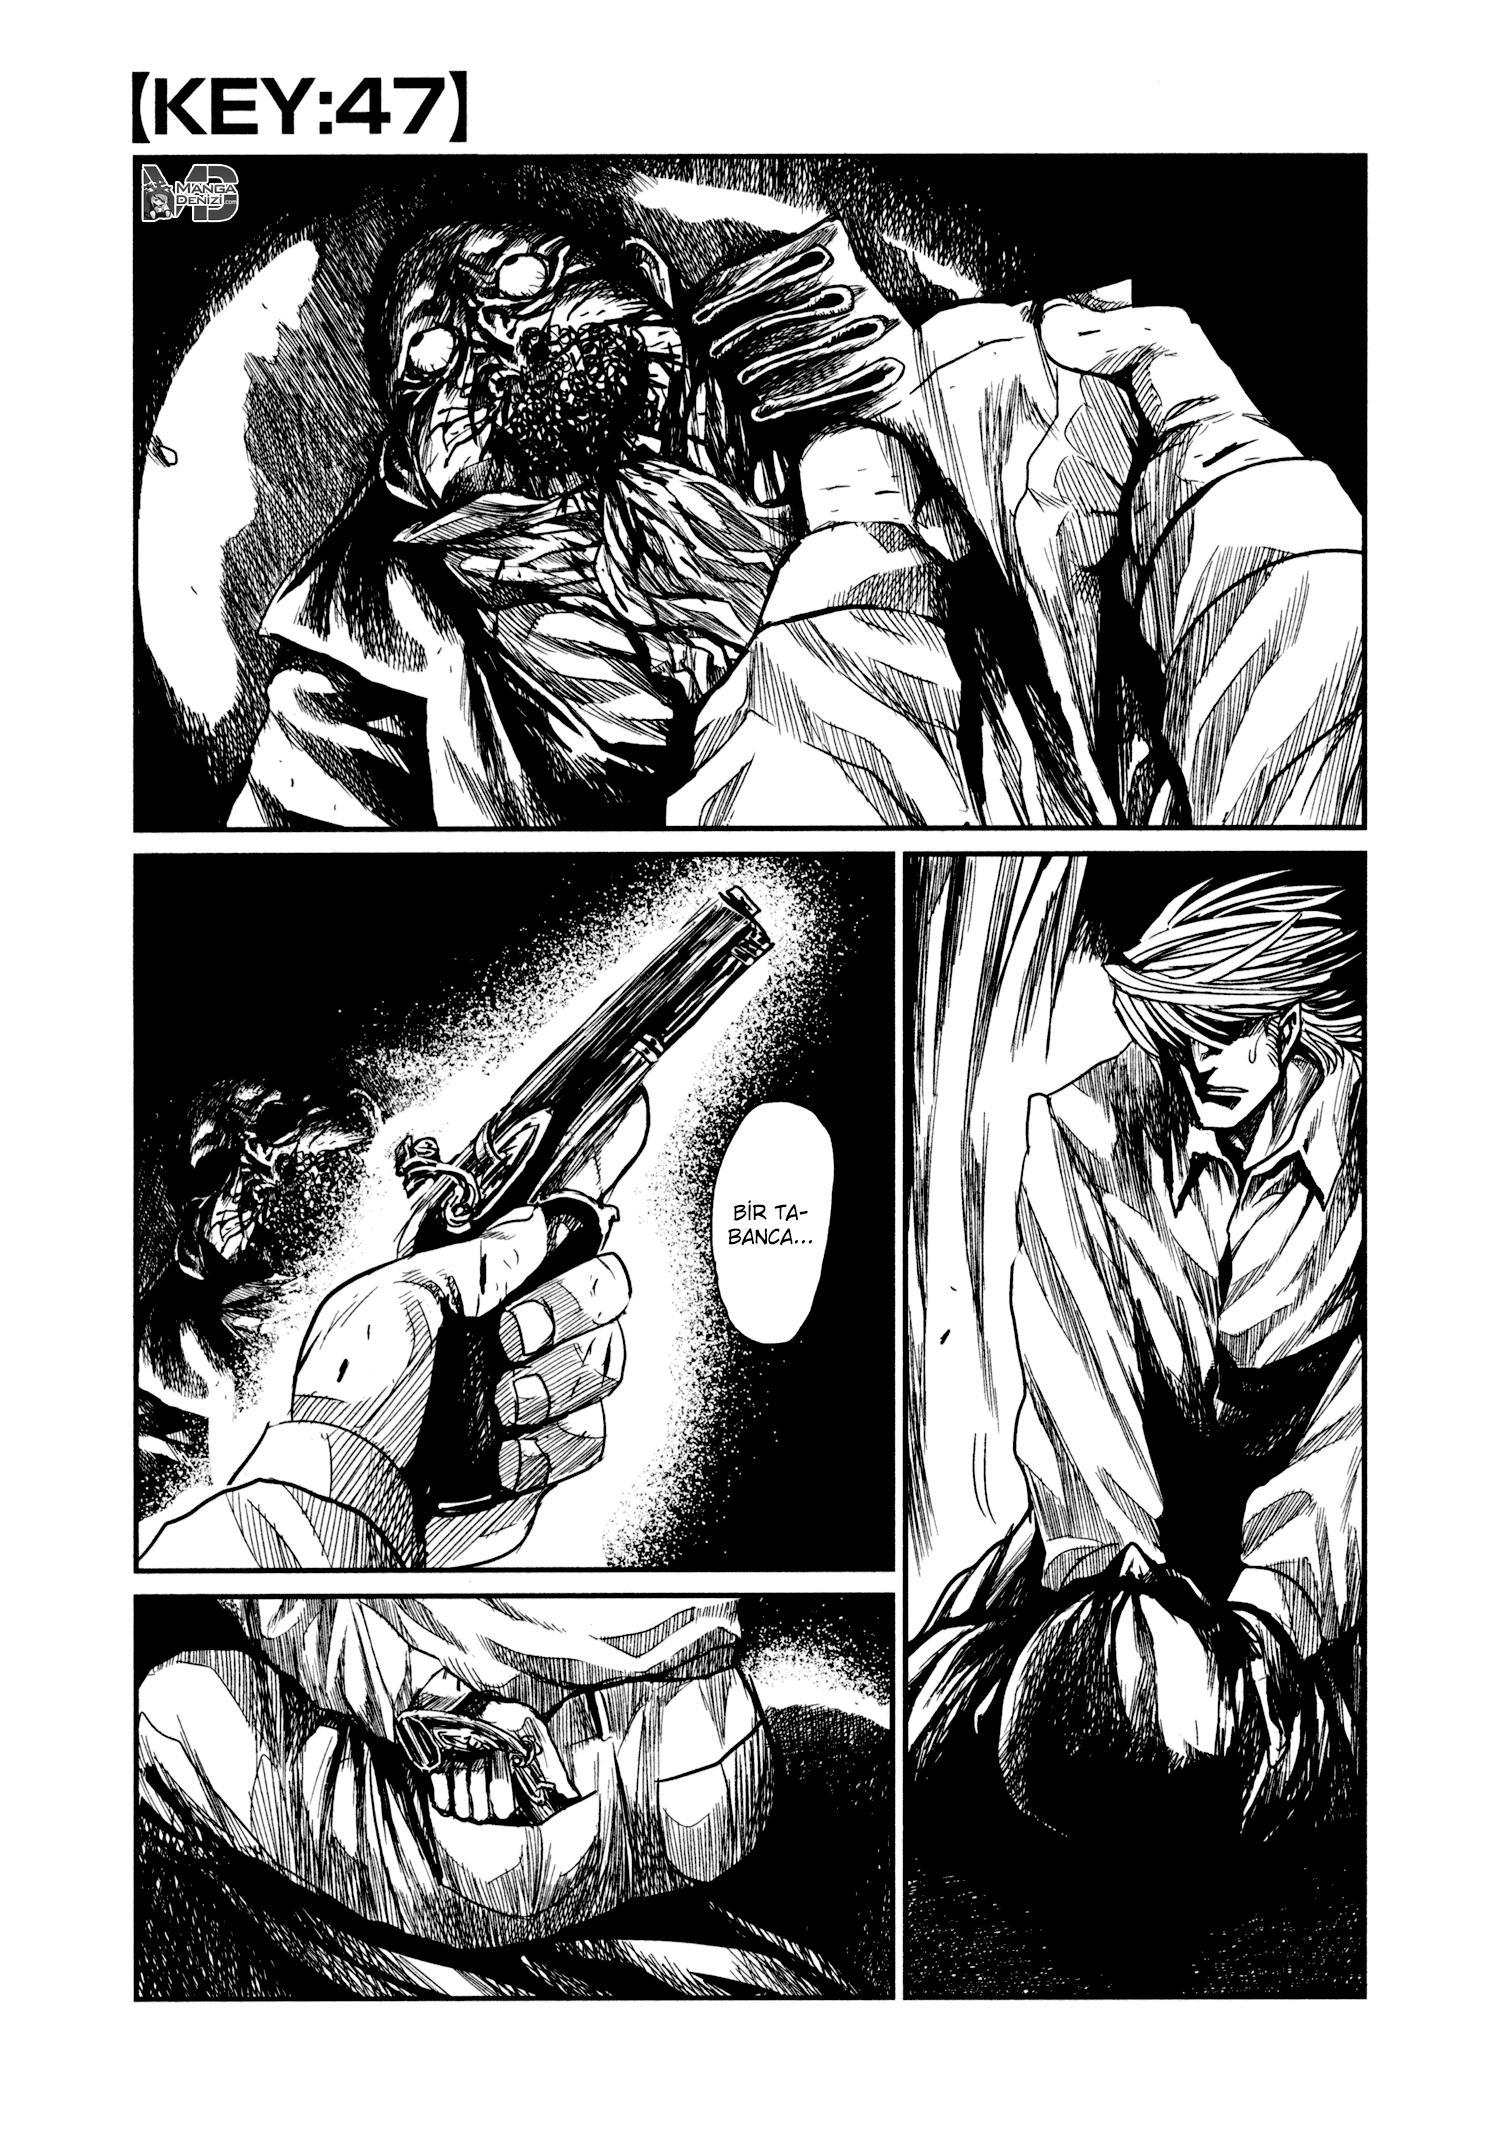 Keyman: The Hand of Judgement mangasının 47 bölümünün 2. sayfasını okuyorsunuz.